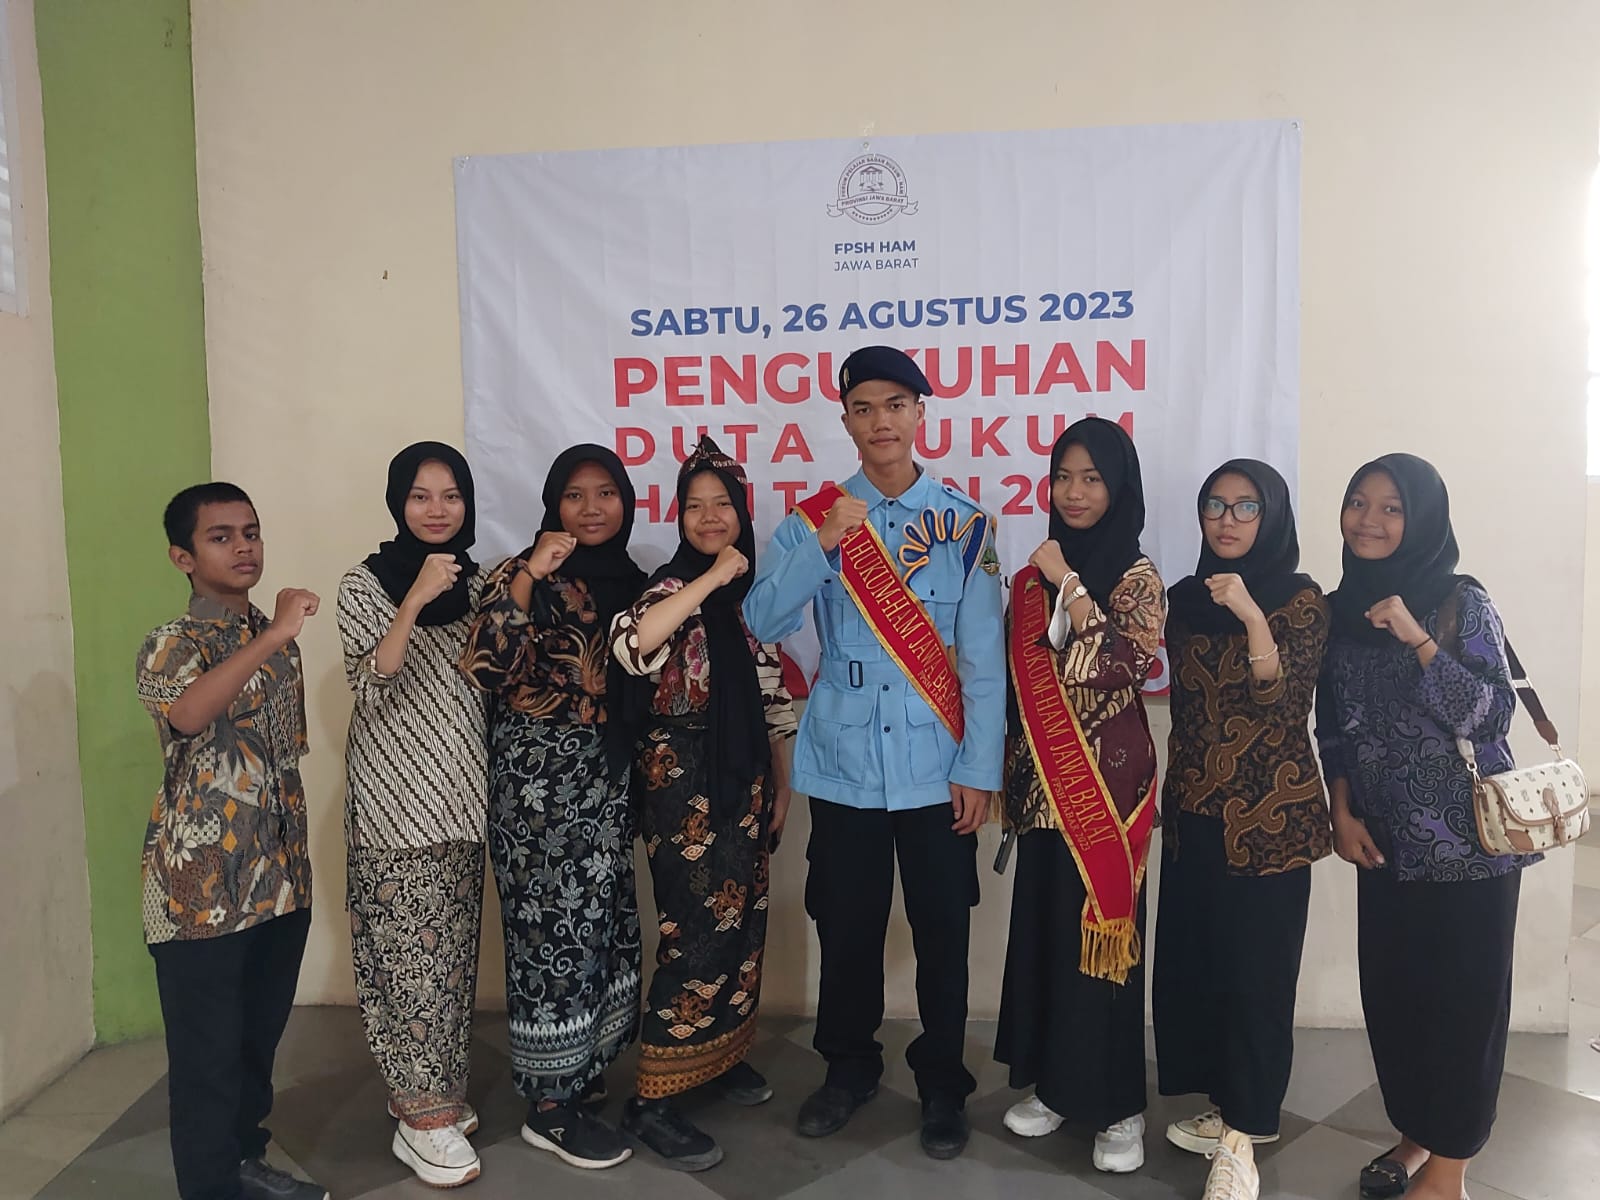 You are currently viewing 8 Siswa/i SMKN 1 Gunungputri Kab. Bogor mengikuti Kegiatan Pengukuhan Duta Hukum dan HAM Provinsi Jawa Barat 2023: Spirit Berbagi untuk Masyarakat